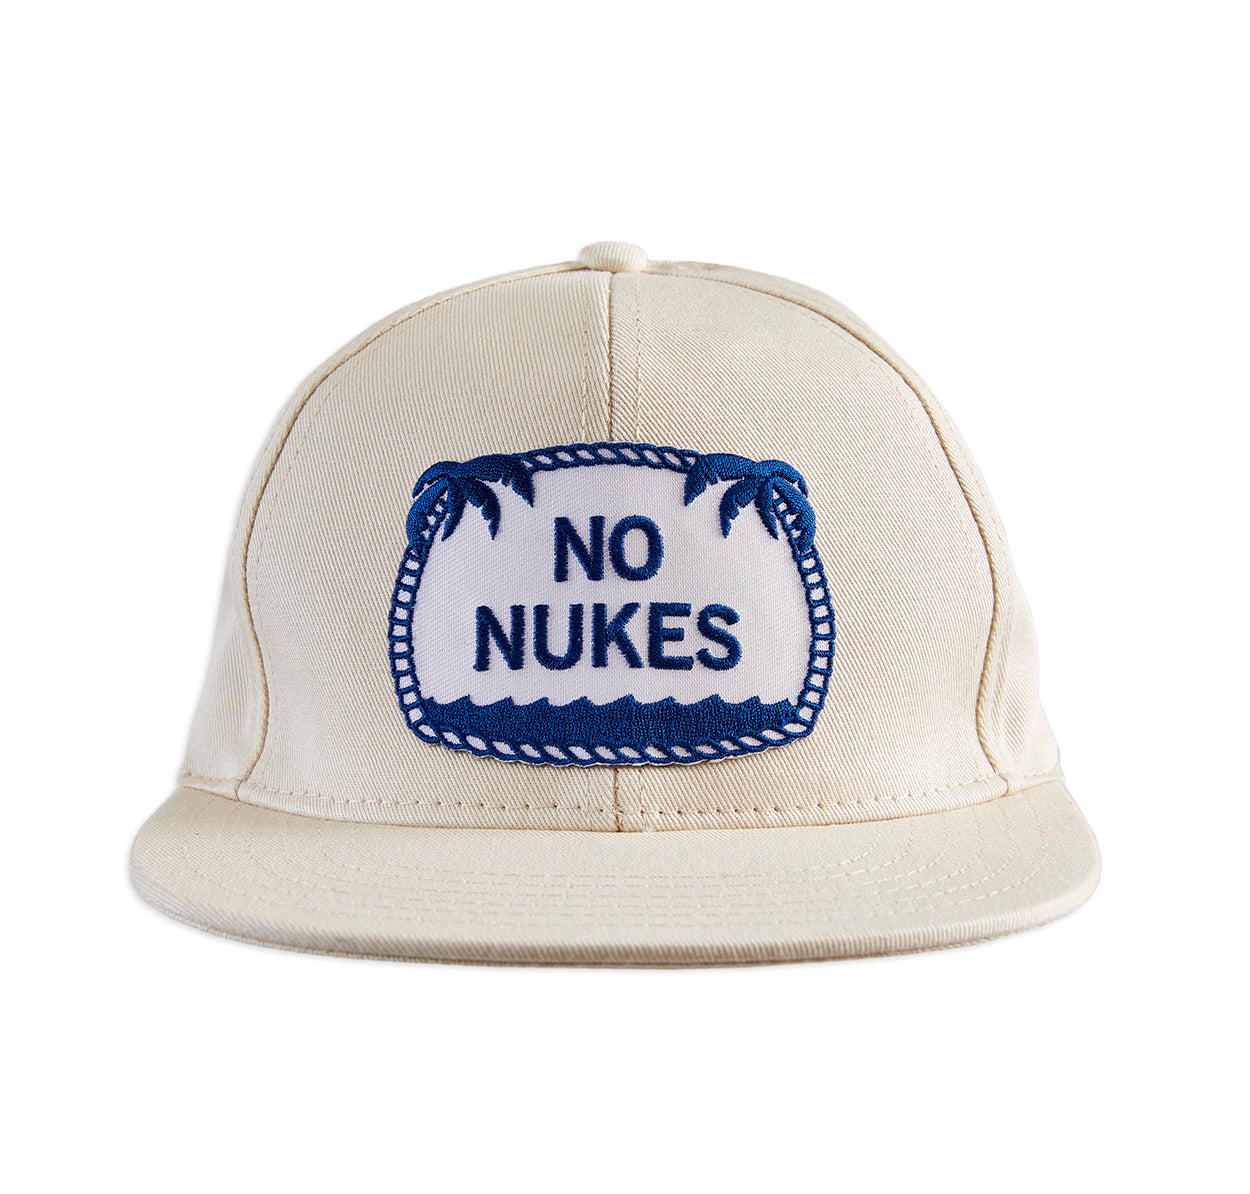 No Nukes ball cap